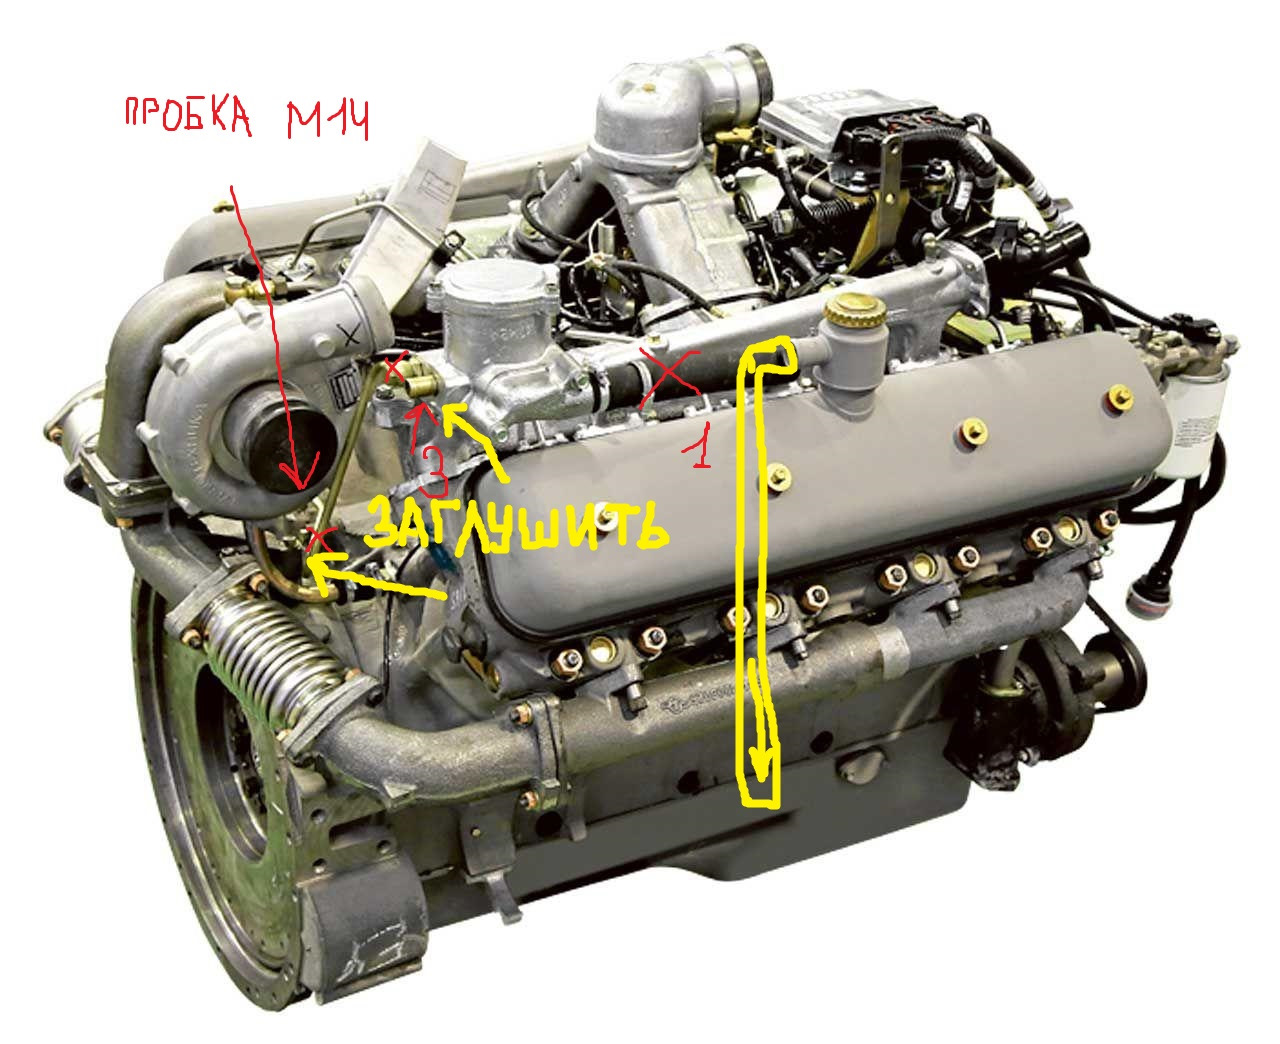 Ремонт двигателя ямз 236